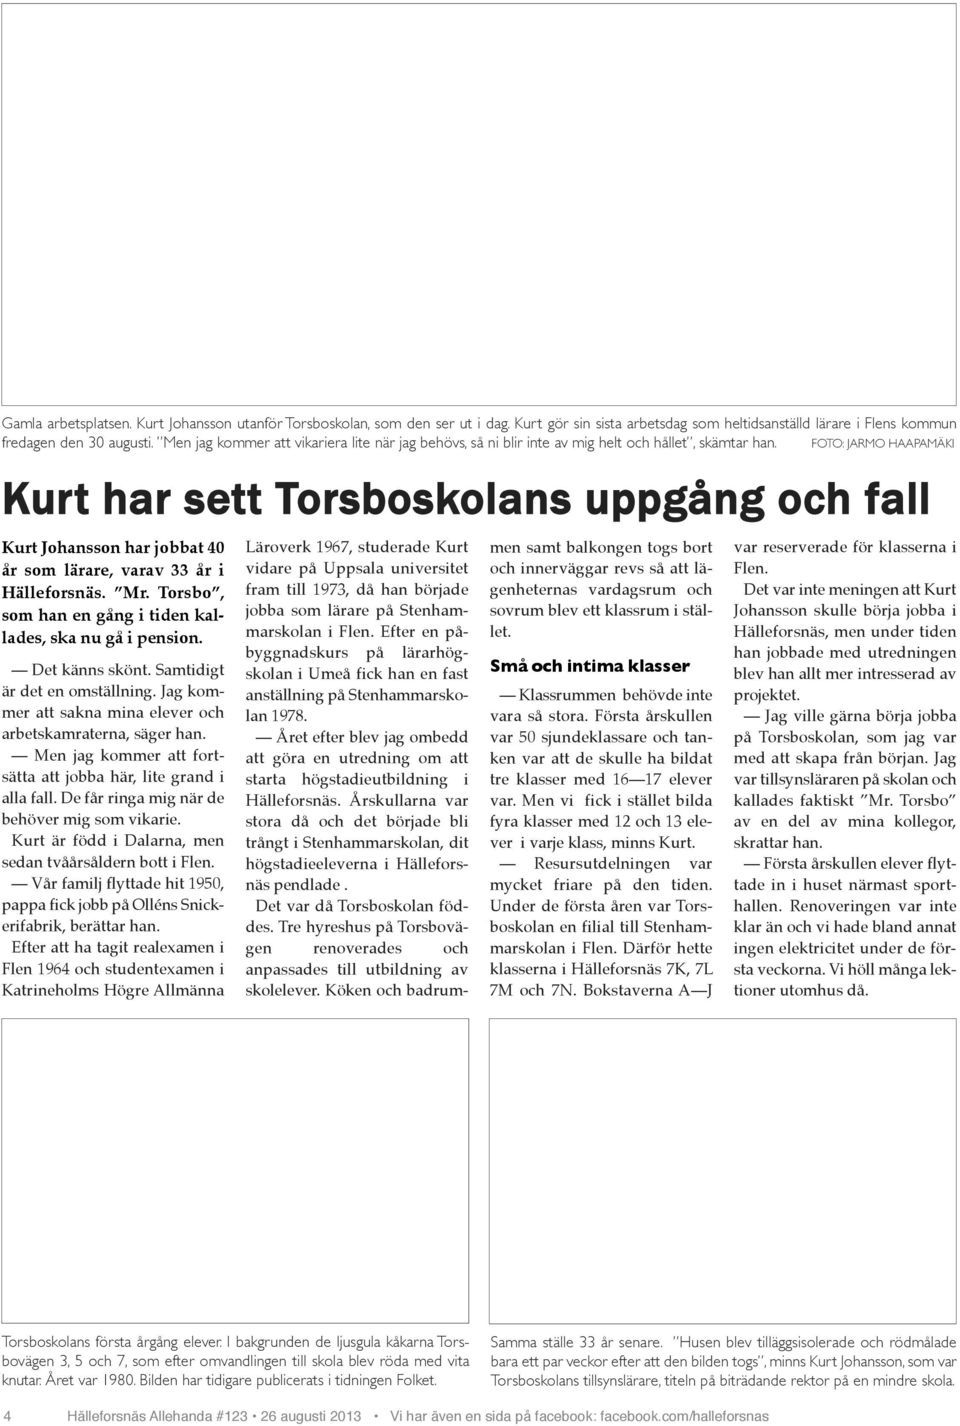 Foto: Kurt har sett Torsboskolans uppgång och fall Kurt Johansson har jobbat 40 år som lärare, varav 33 år i Hälleforsnäs. Mr. Torsbo, som han en gång i tiden kallades, ska nu gå i pension.